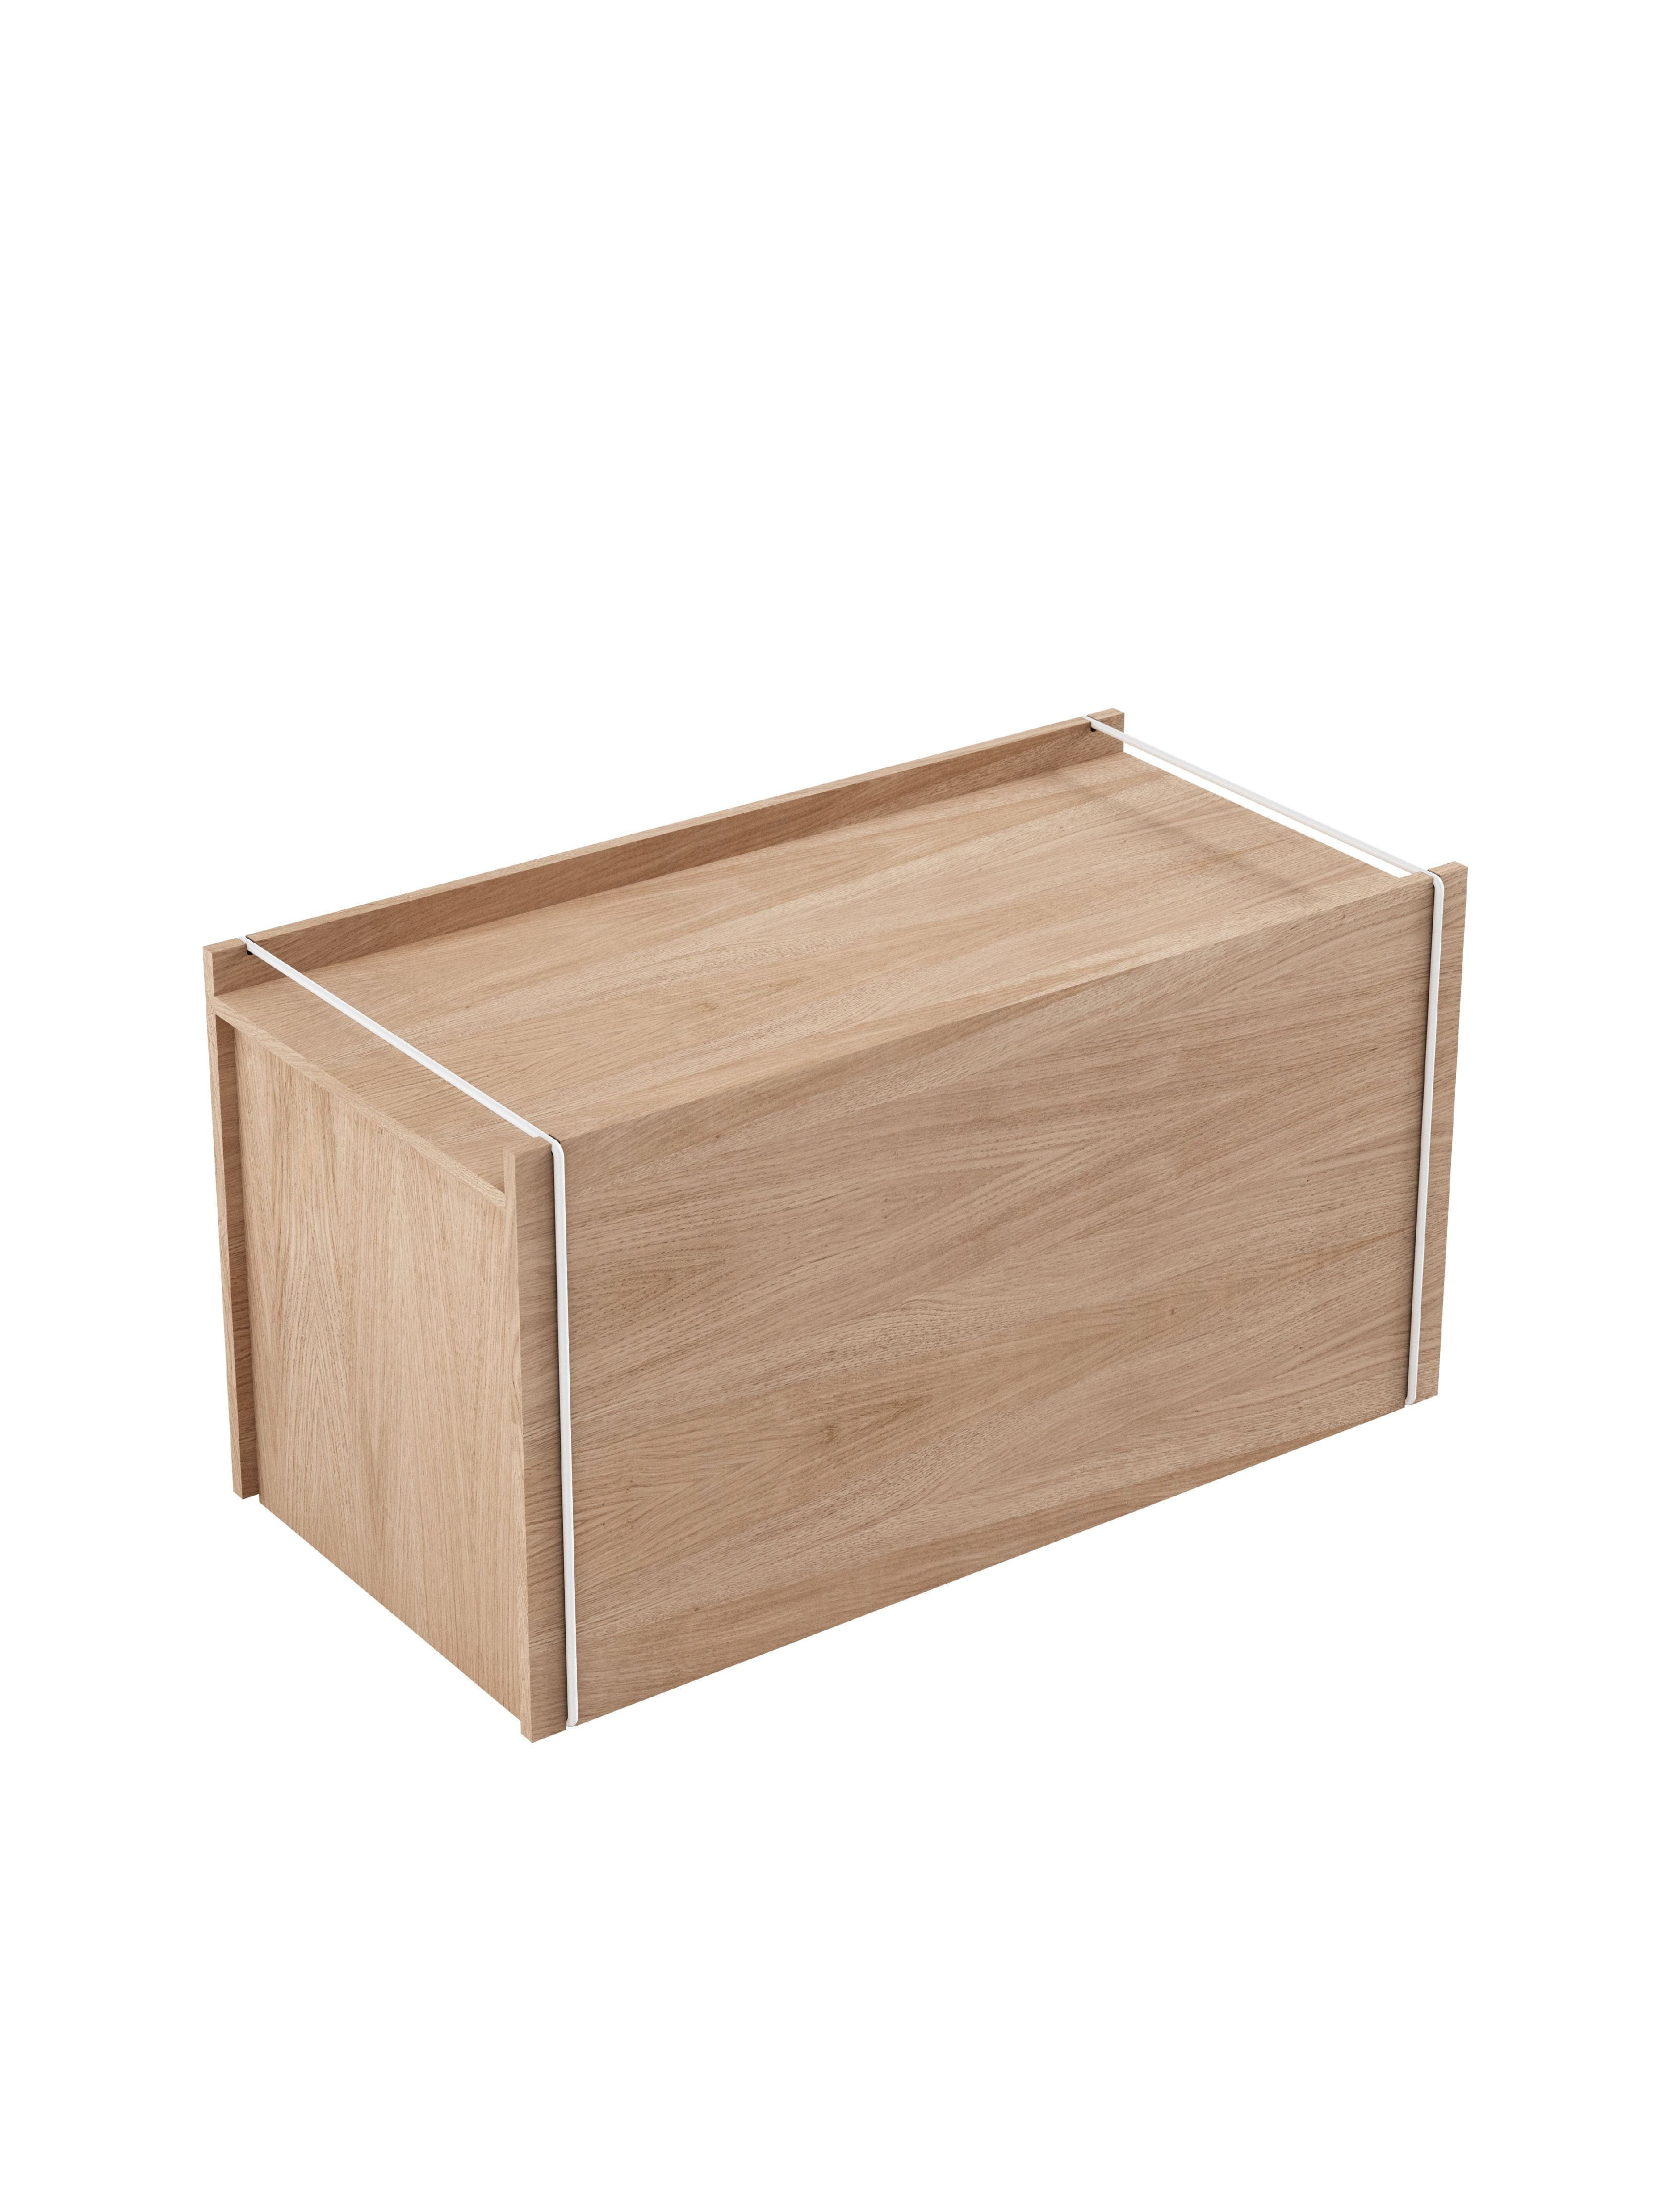 Moebe Storage Box, Oak/White